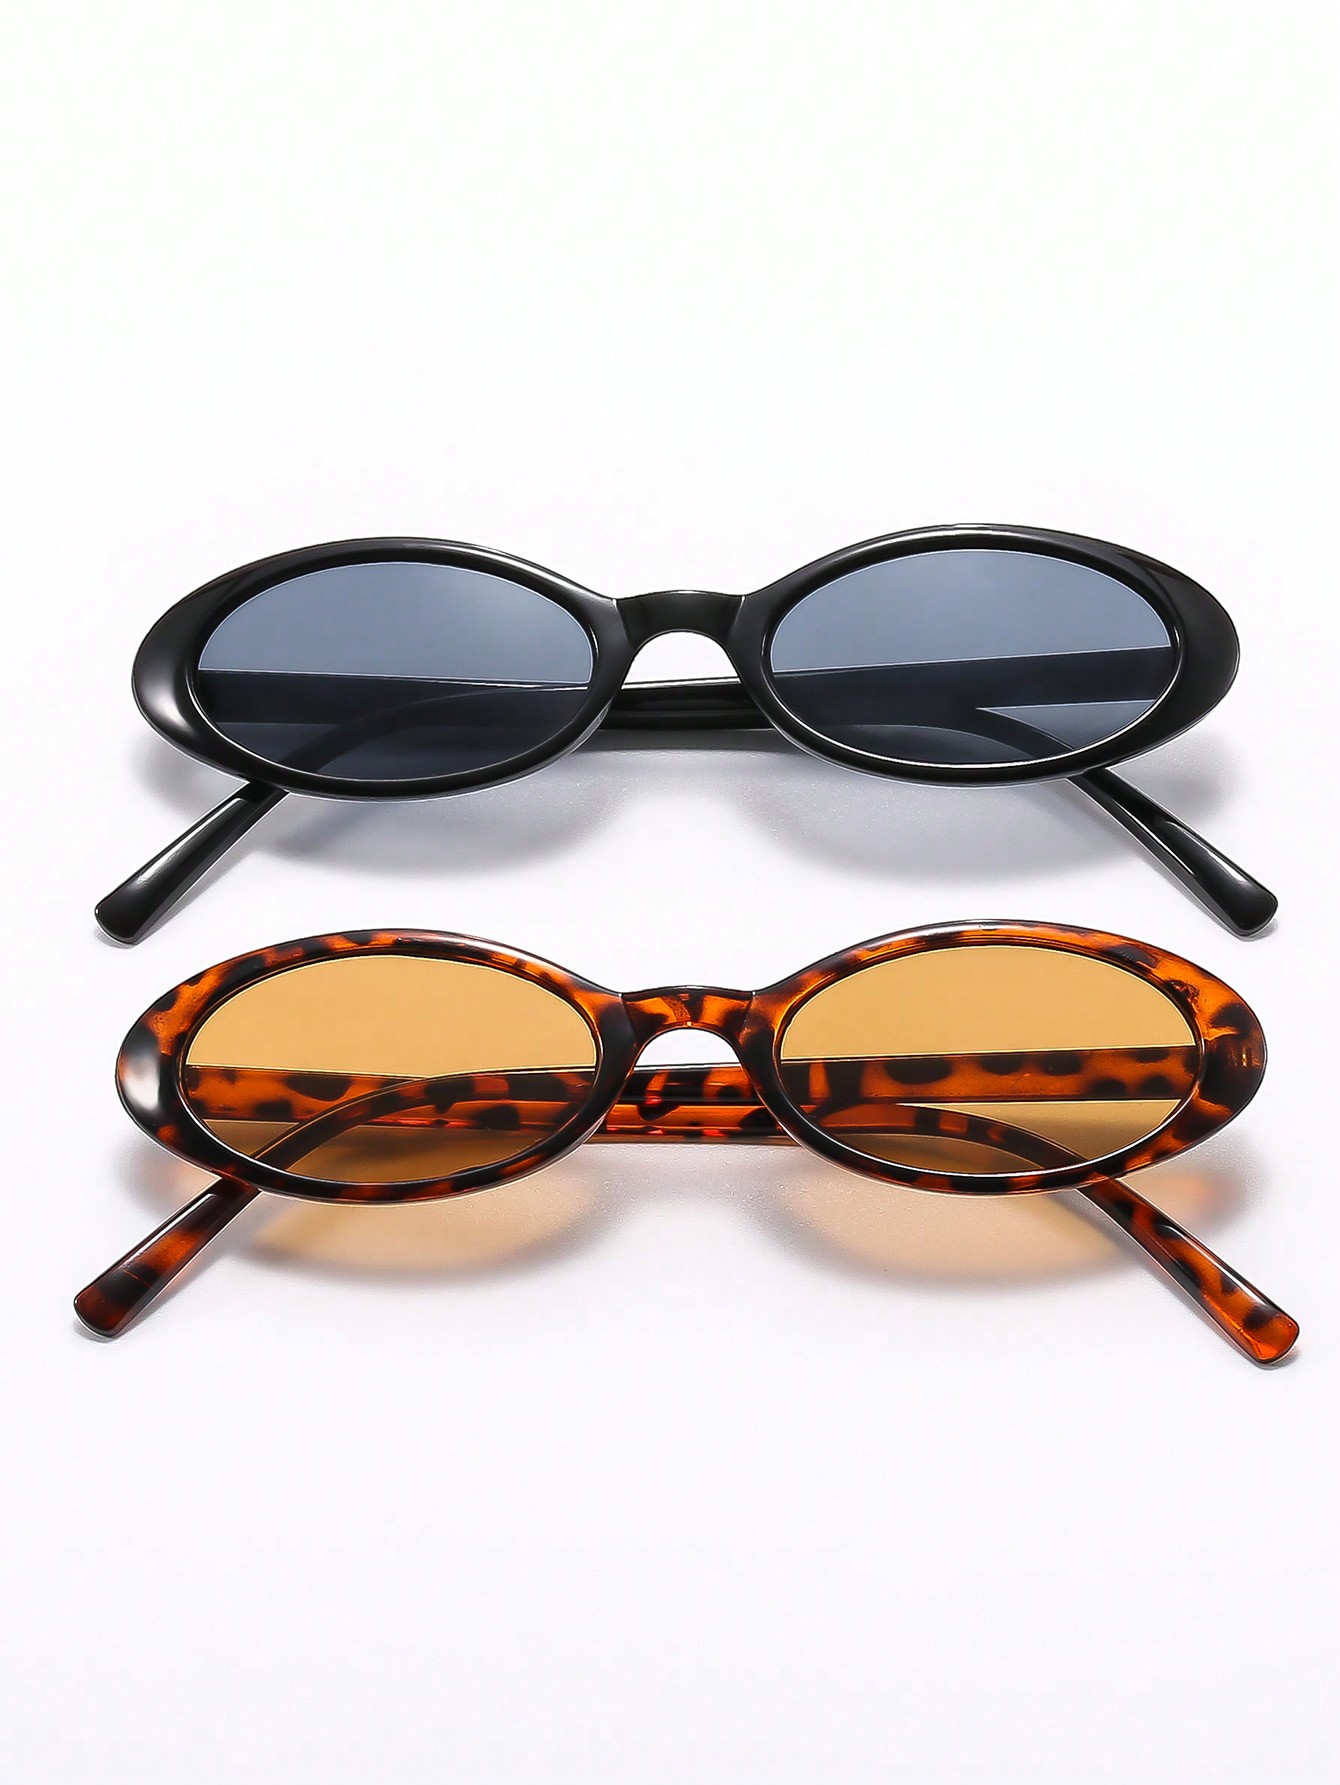 2шт овальные солнцезащитные очки в винтажном стиле для улицы с защитой от ультрафиолета 400 для женщин маленькие прямоугольные солнцезащитные очки для путешествий в стиле ретро с защитой от ультрафиолета 400 женские солнцезащитные очки